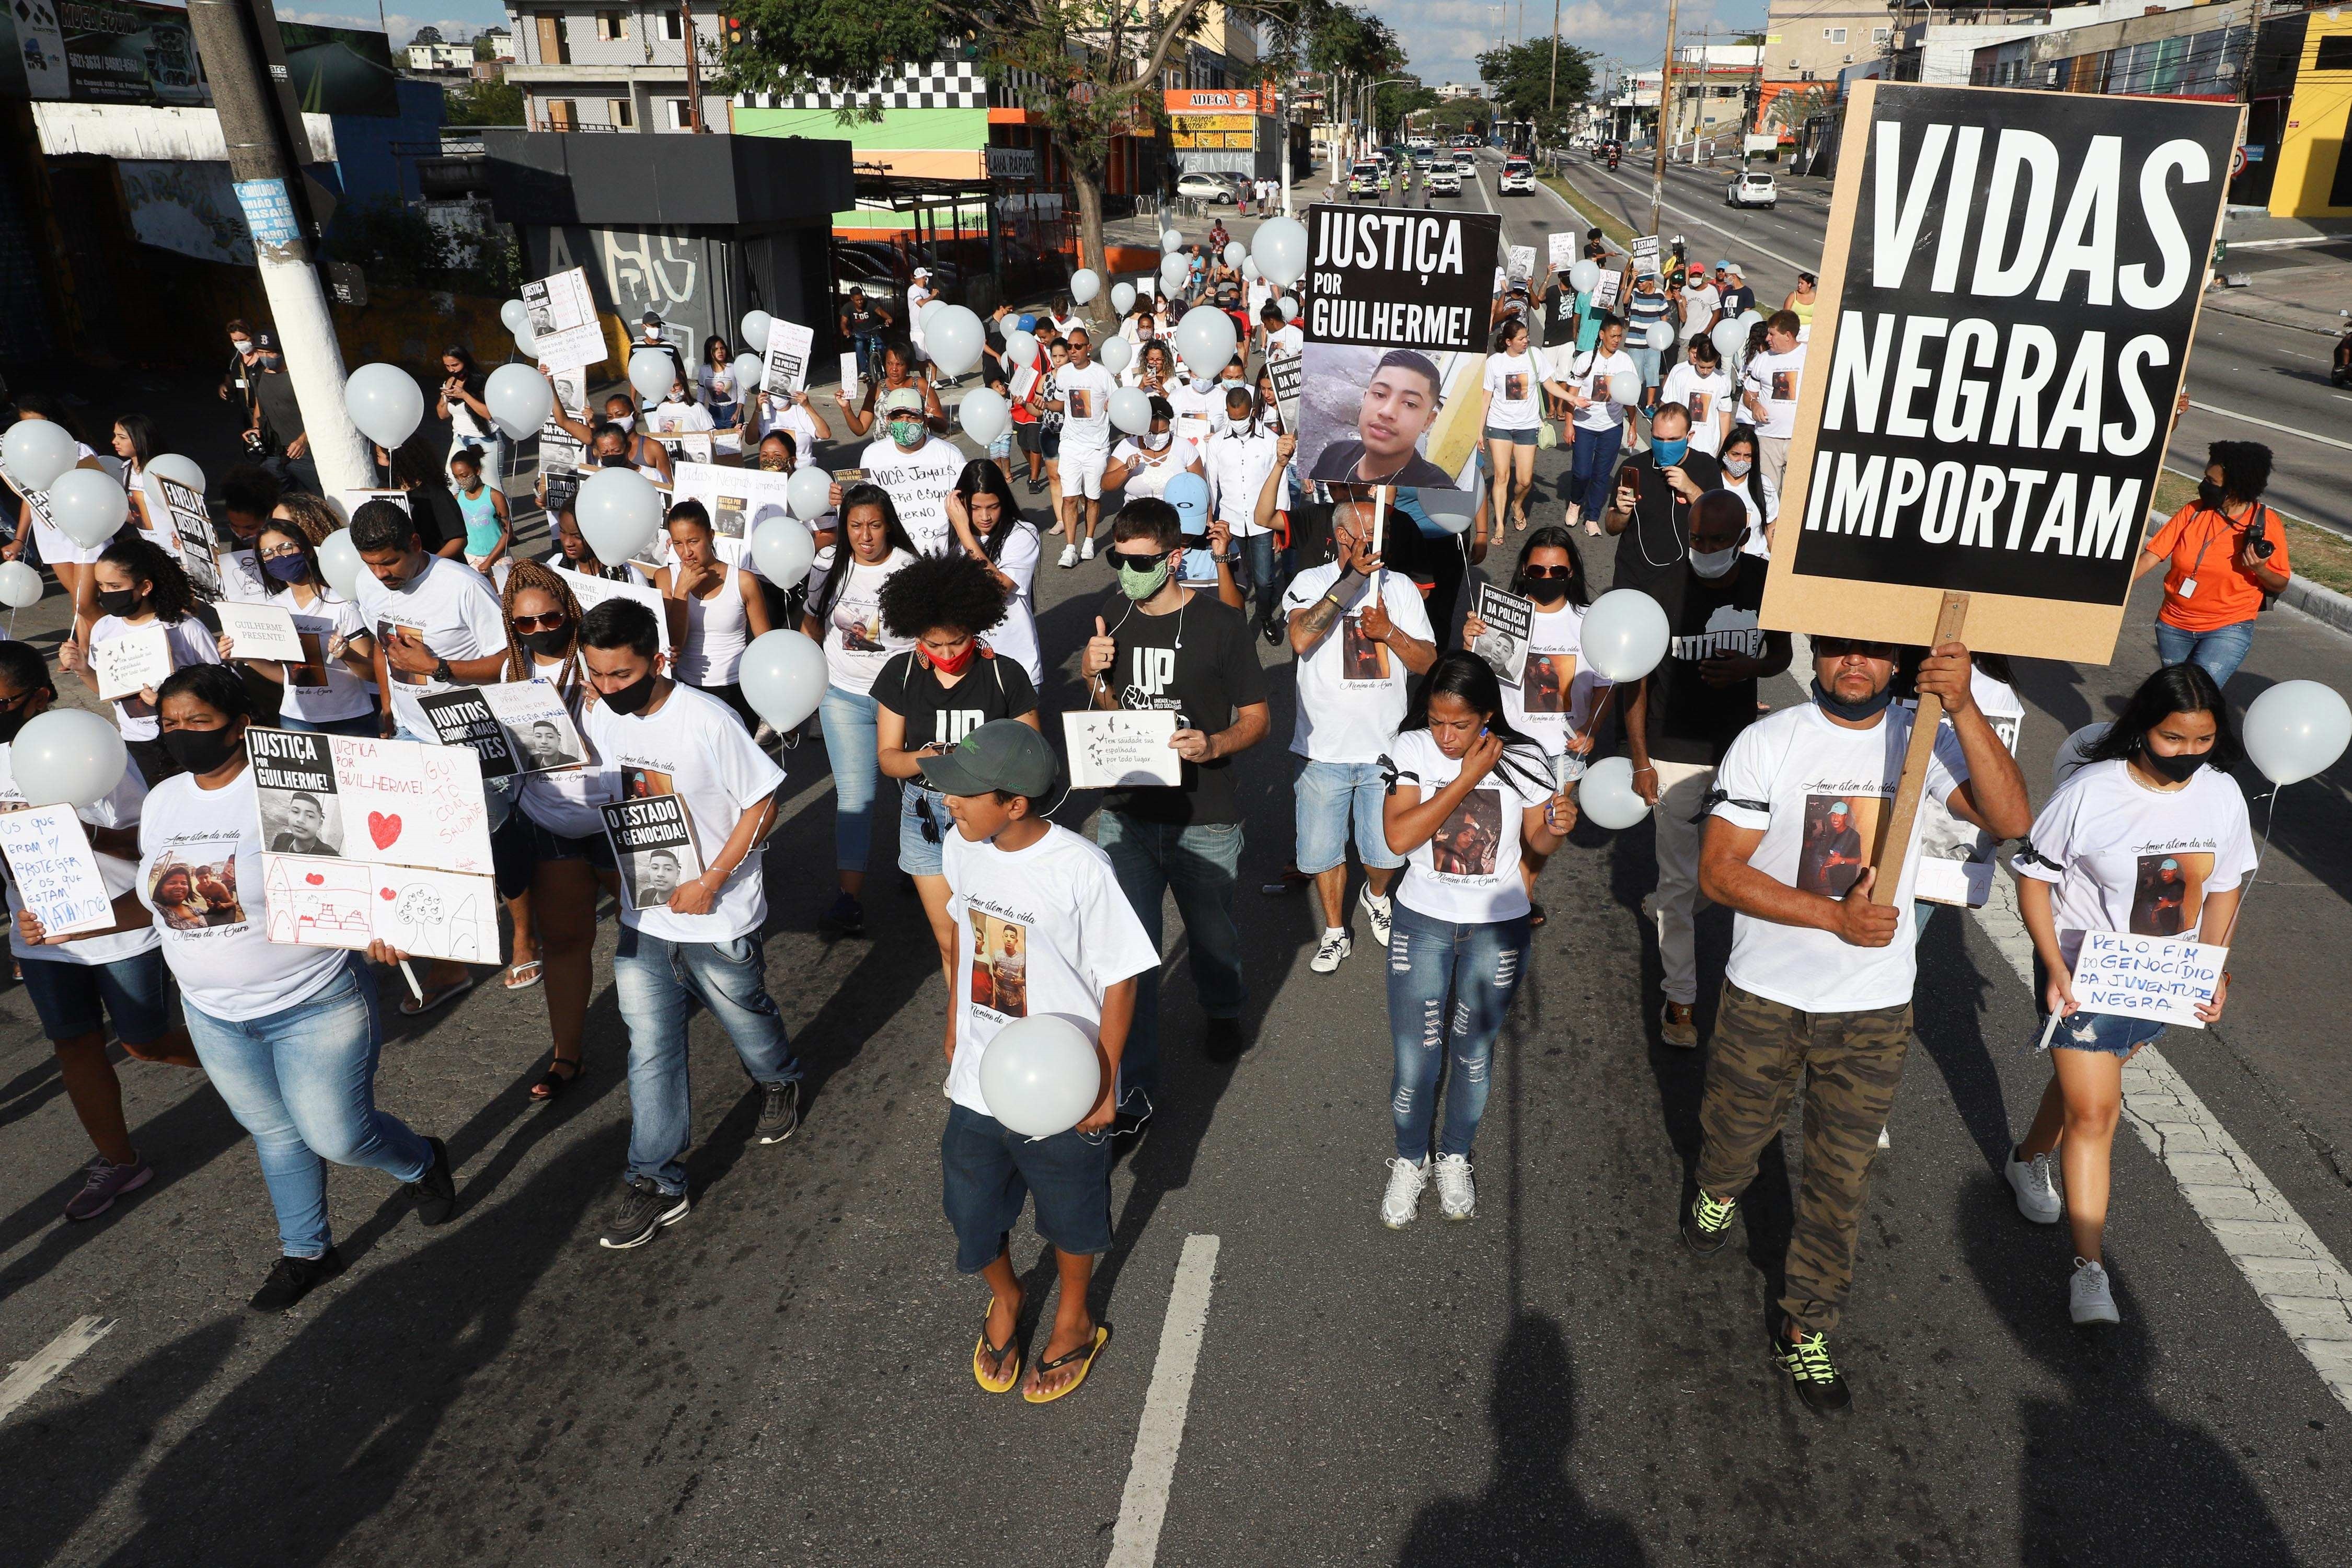 Cientos de personas en una marcha silenciosa pidiendo justicia por la muerte de un chico negro a manos de la policía en Vila Clara, Sao Paulo. La mitad de la población es afrodescendiente y no tienen las mismas oportunidades que los blancos. (EFE/LeoBarrilari)
